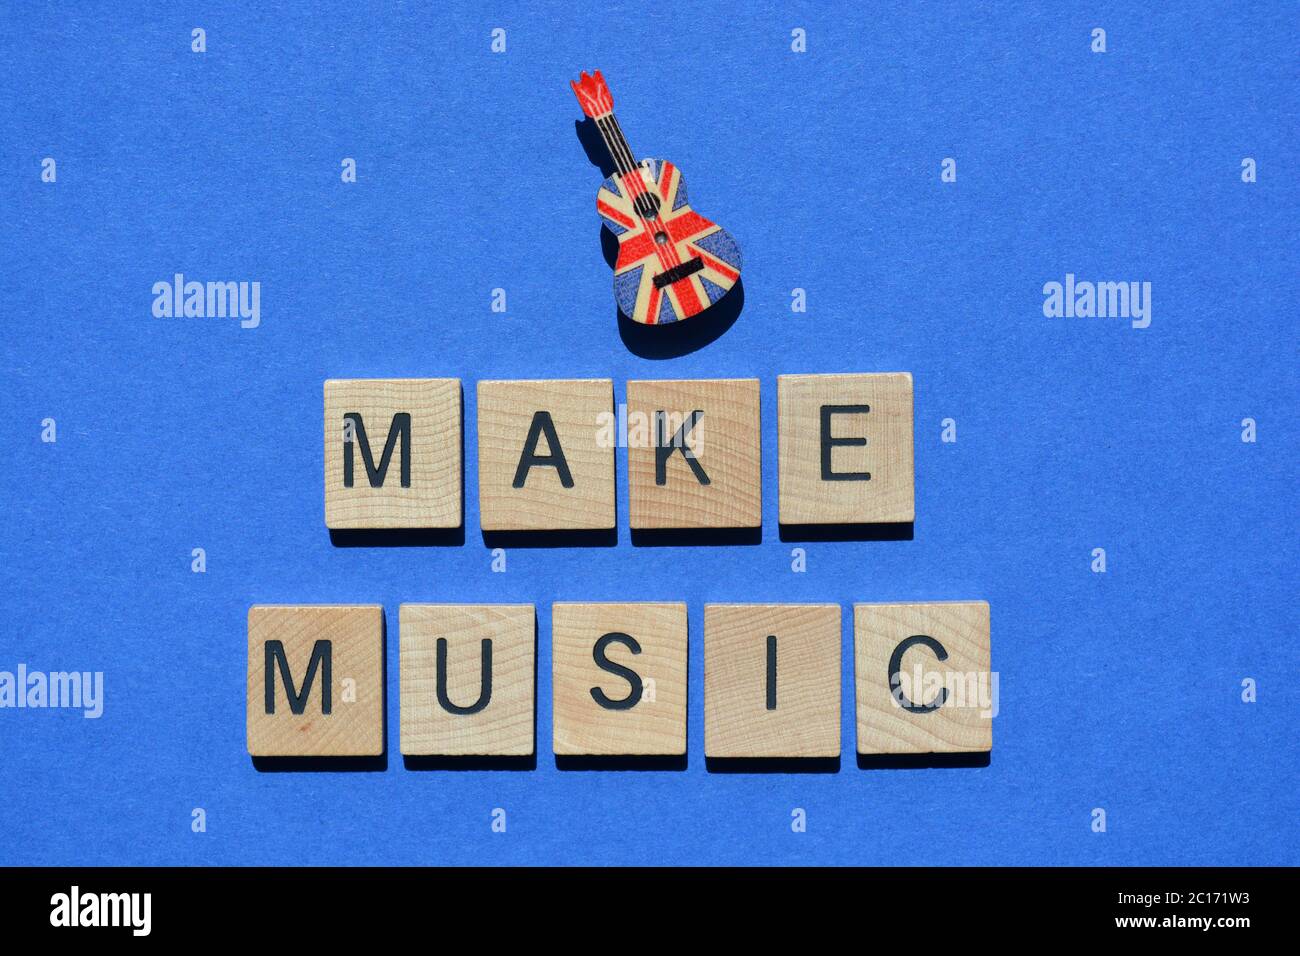 Make Music, Wörter in 3d-Holz-Alphabet Buchstaben isoliert auf blauem Hintergrund, mit einem Ukulele-Stift mit einem Union Jack Flag-Muster verziert Stockfoto